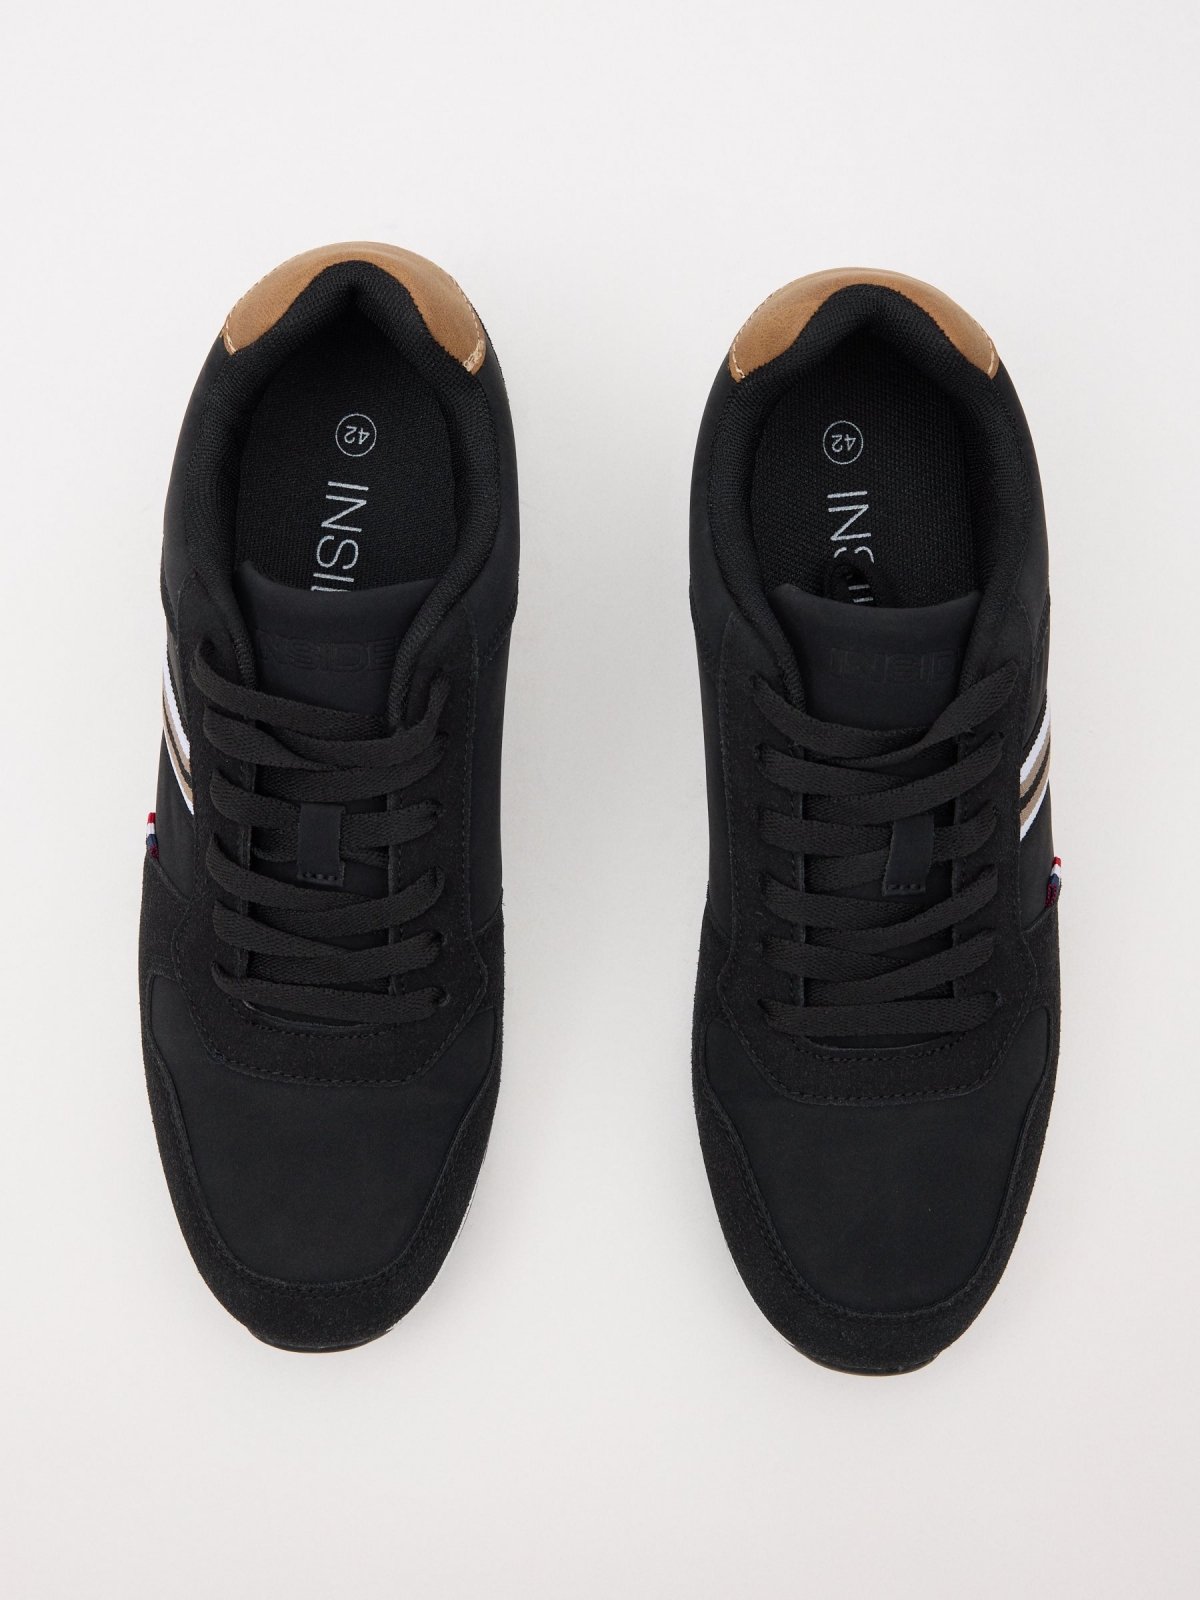 Sapato casual combinado preto/bege vista superior